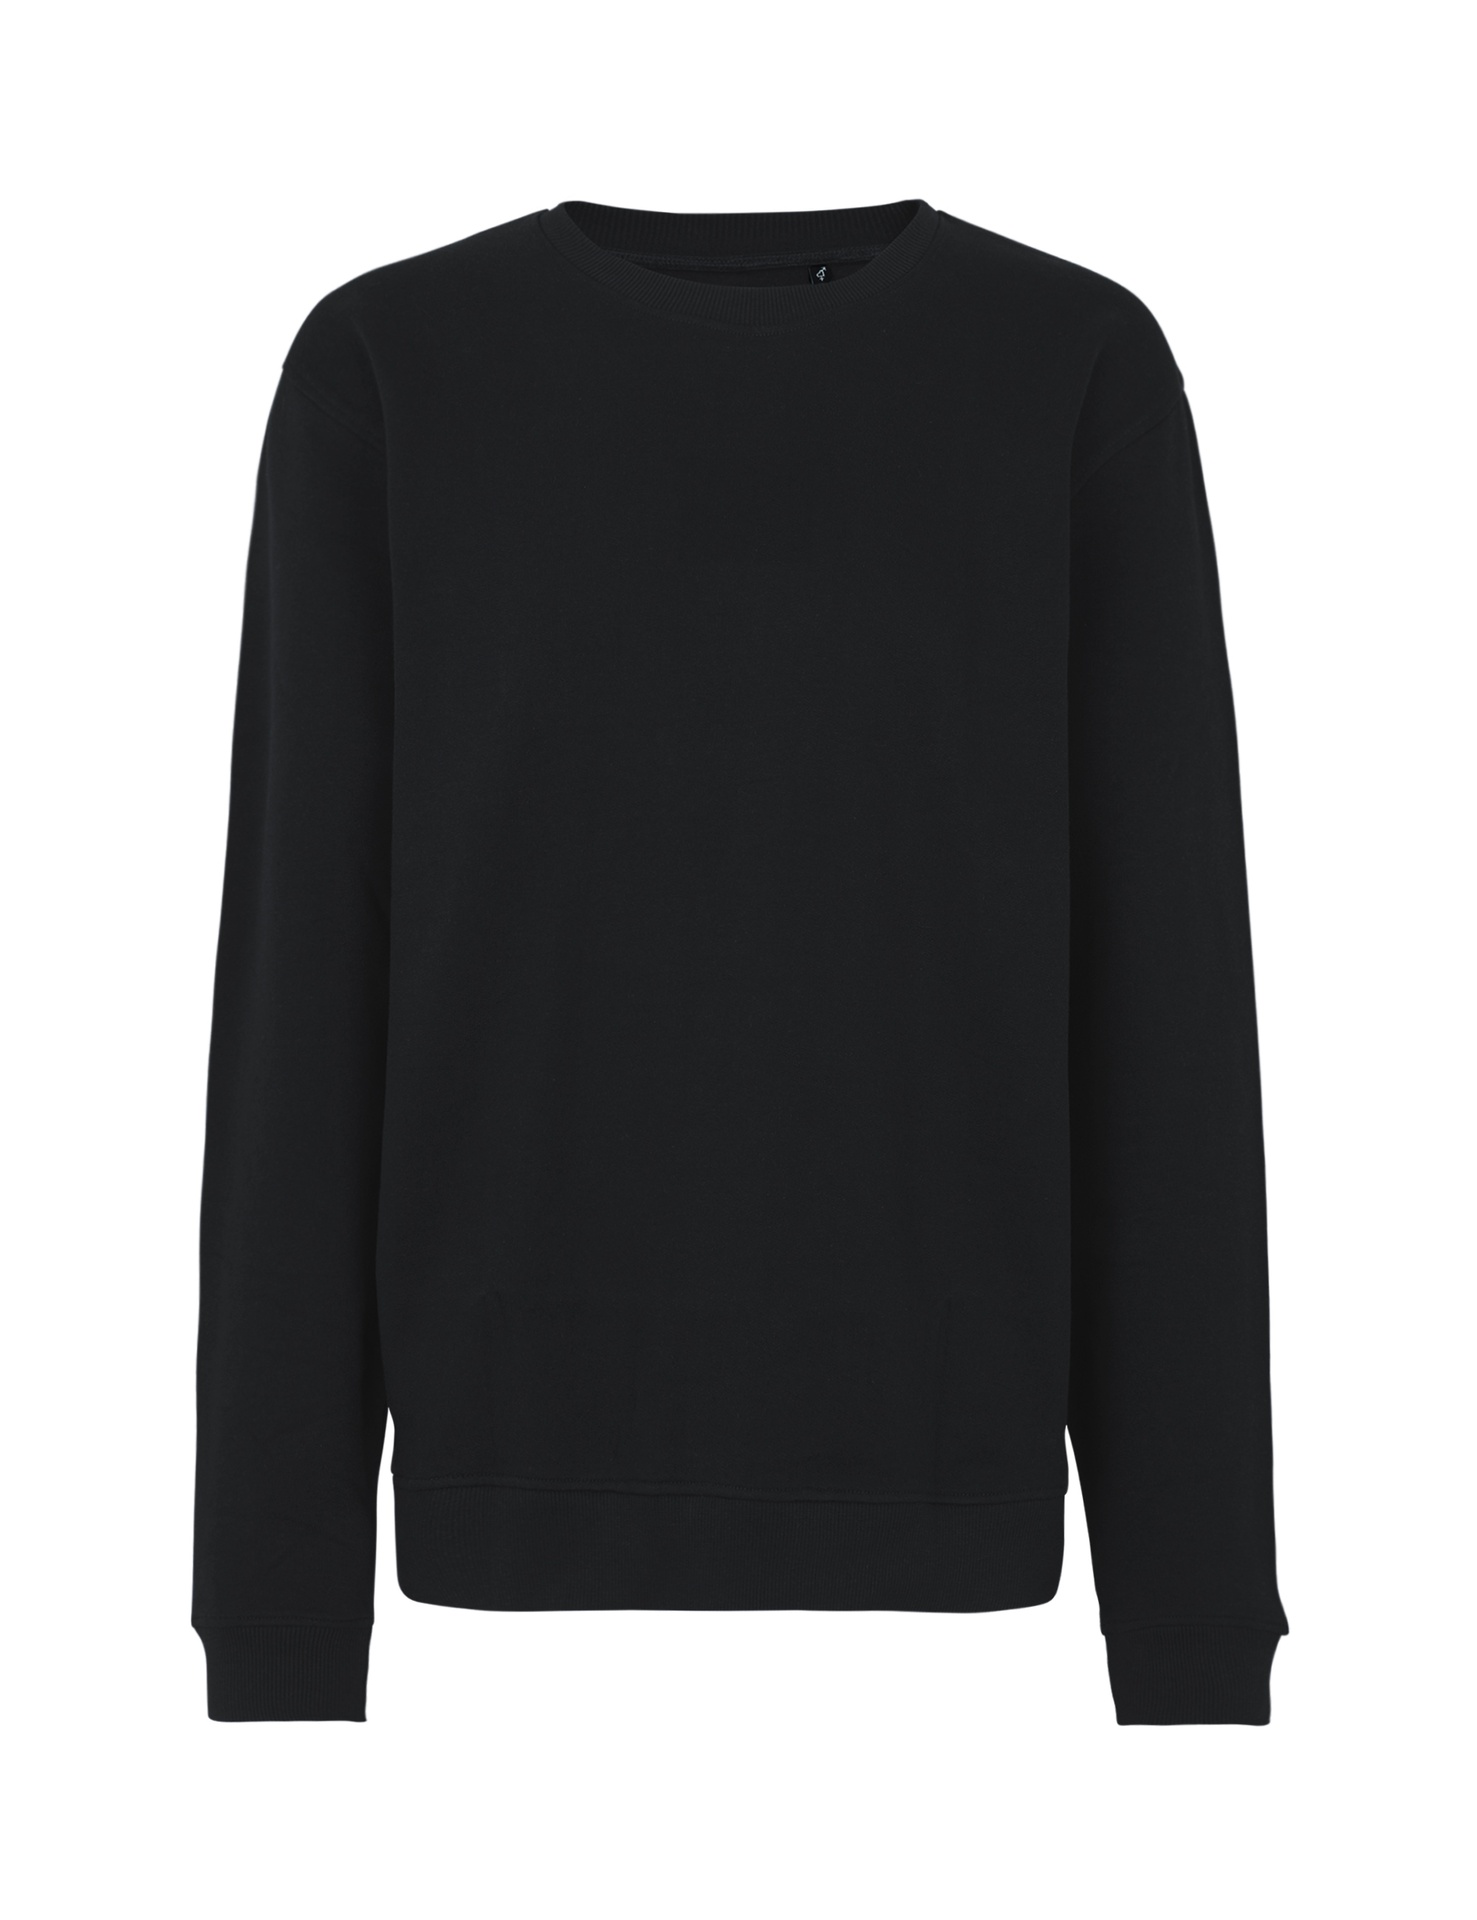 [PR/03528] Unisex Workwear Sweatshirt (Black 03, XL)